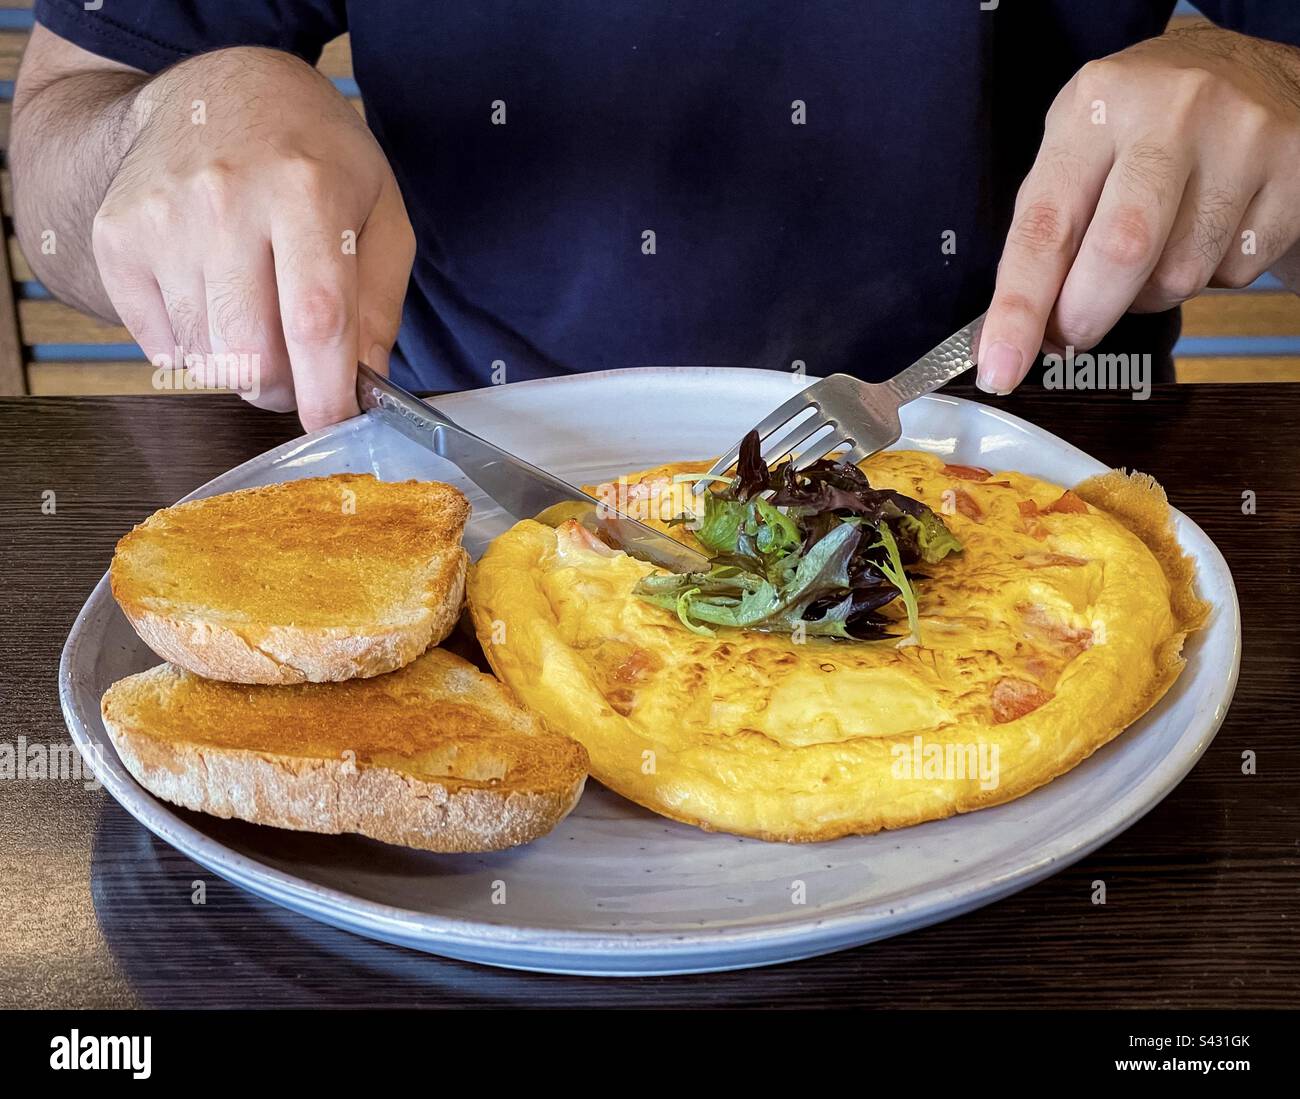 A metà dell'uomo si usano le posate per tagliare l'omelette al formaggio vegetariano sul piatto con il pane a pasta madre. Foto Stock